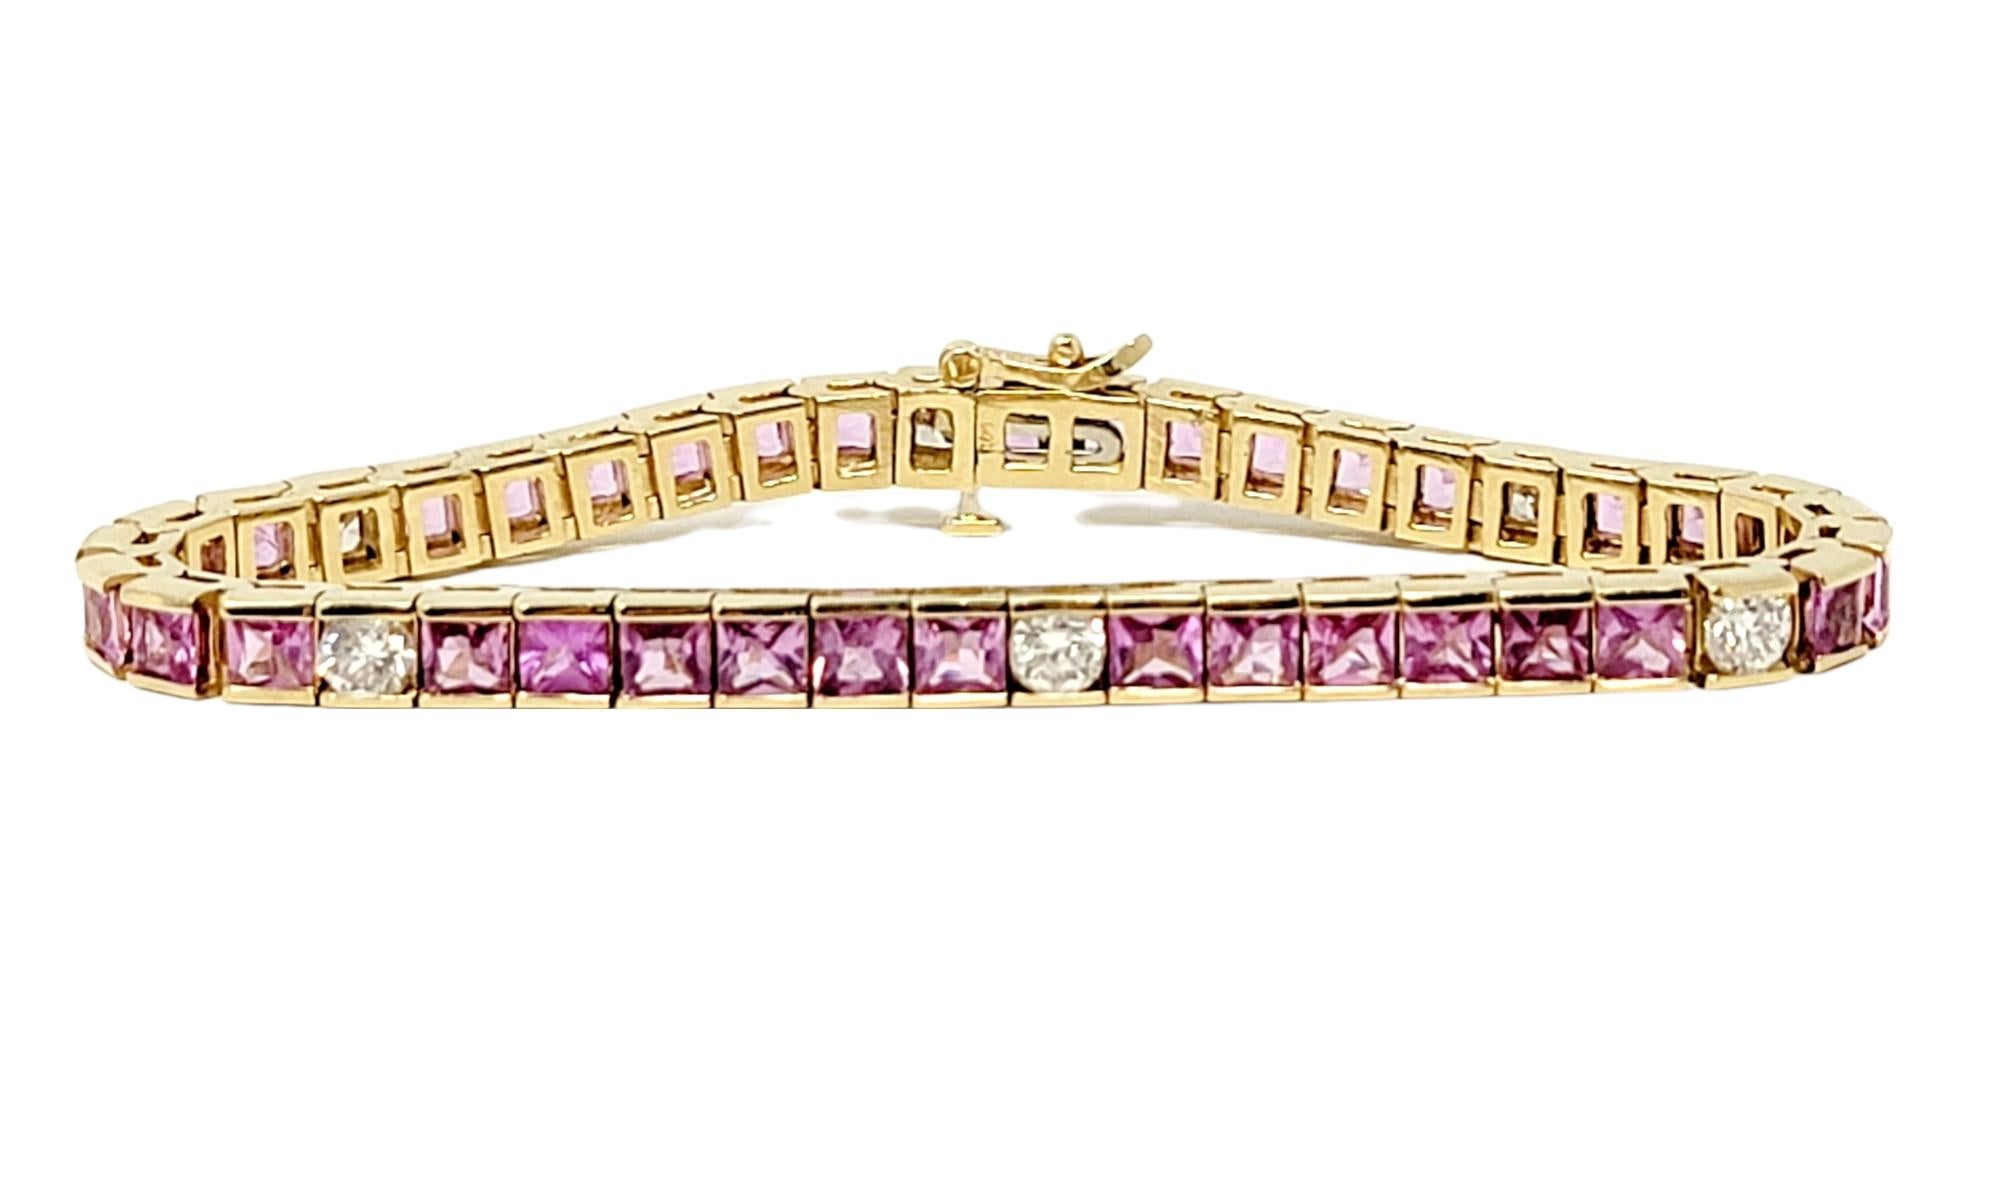 7mm oval cluster tennis bracelet pink stones rose gold